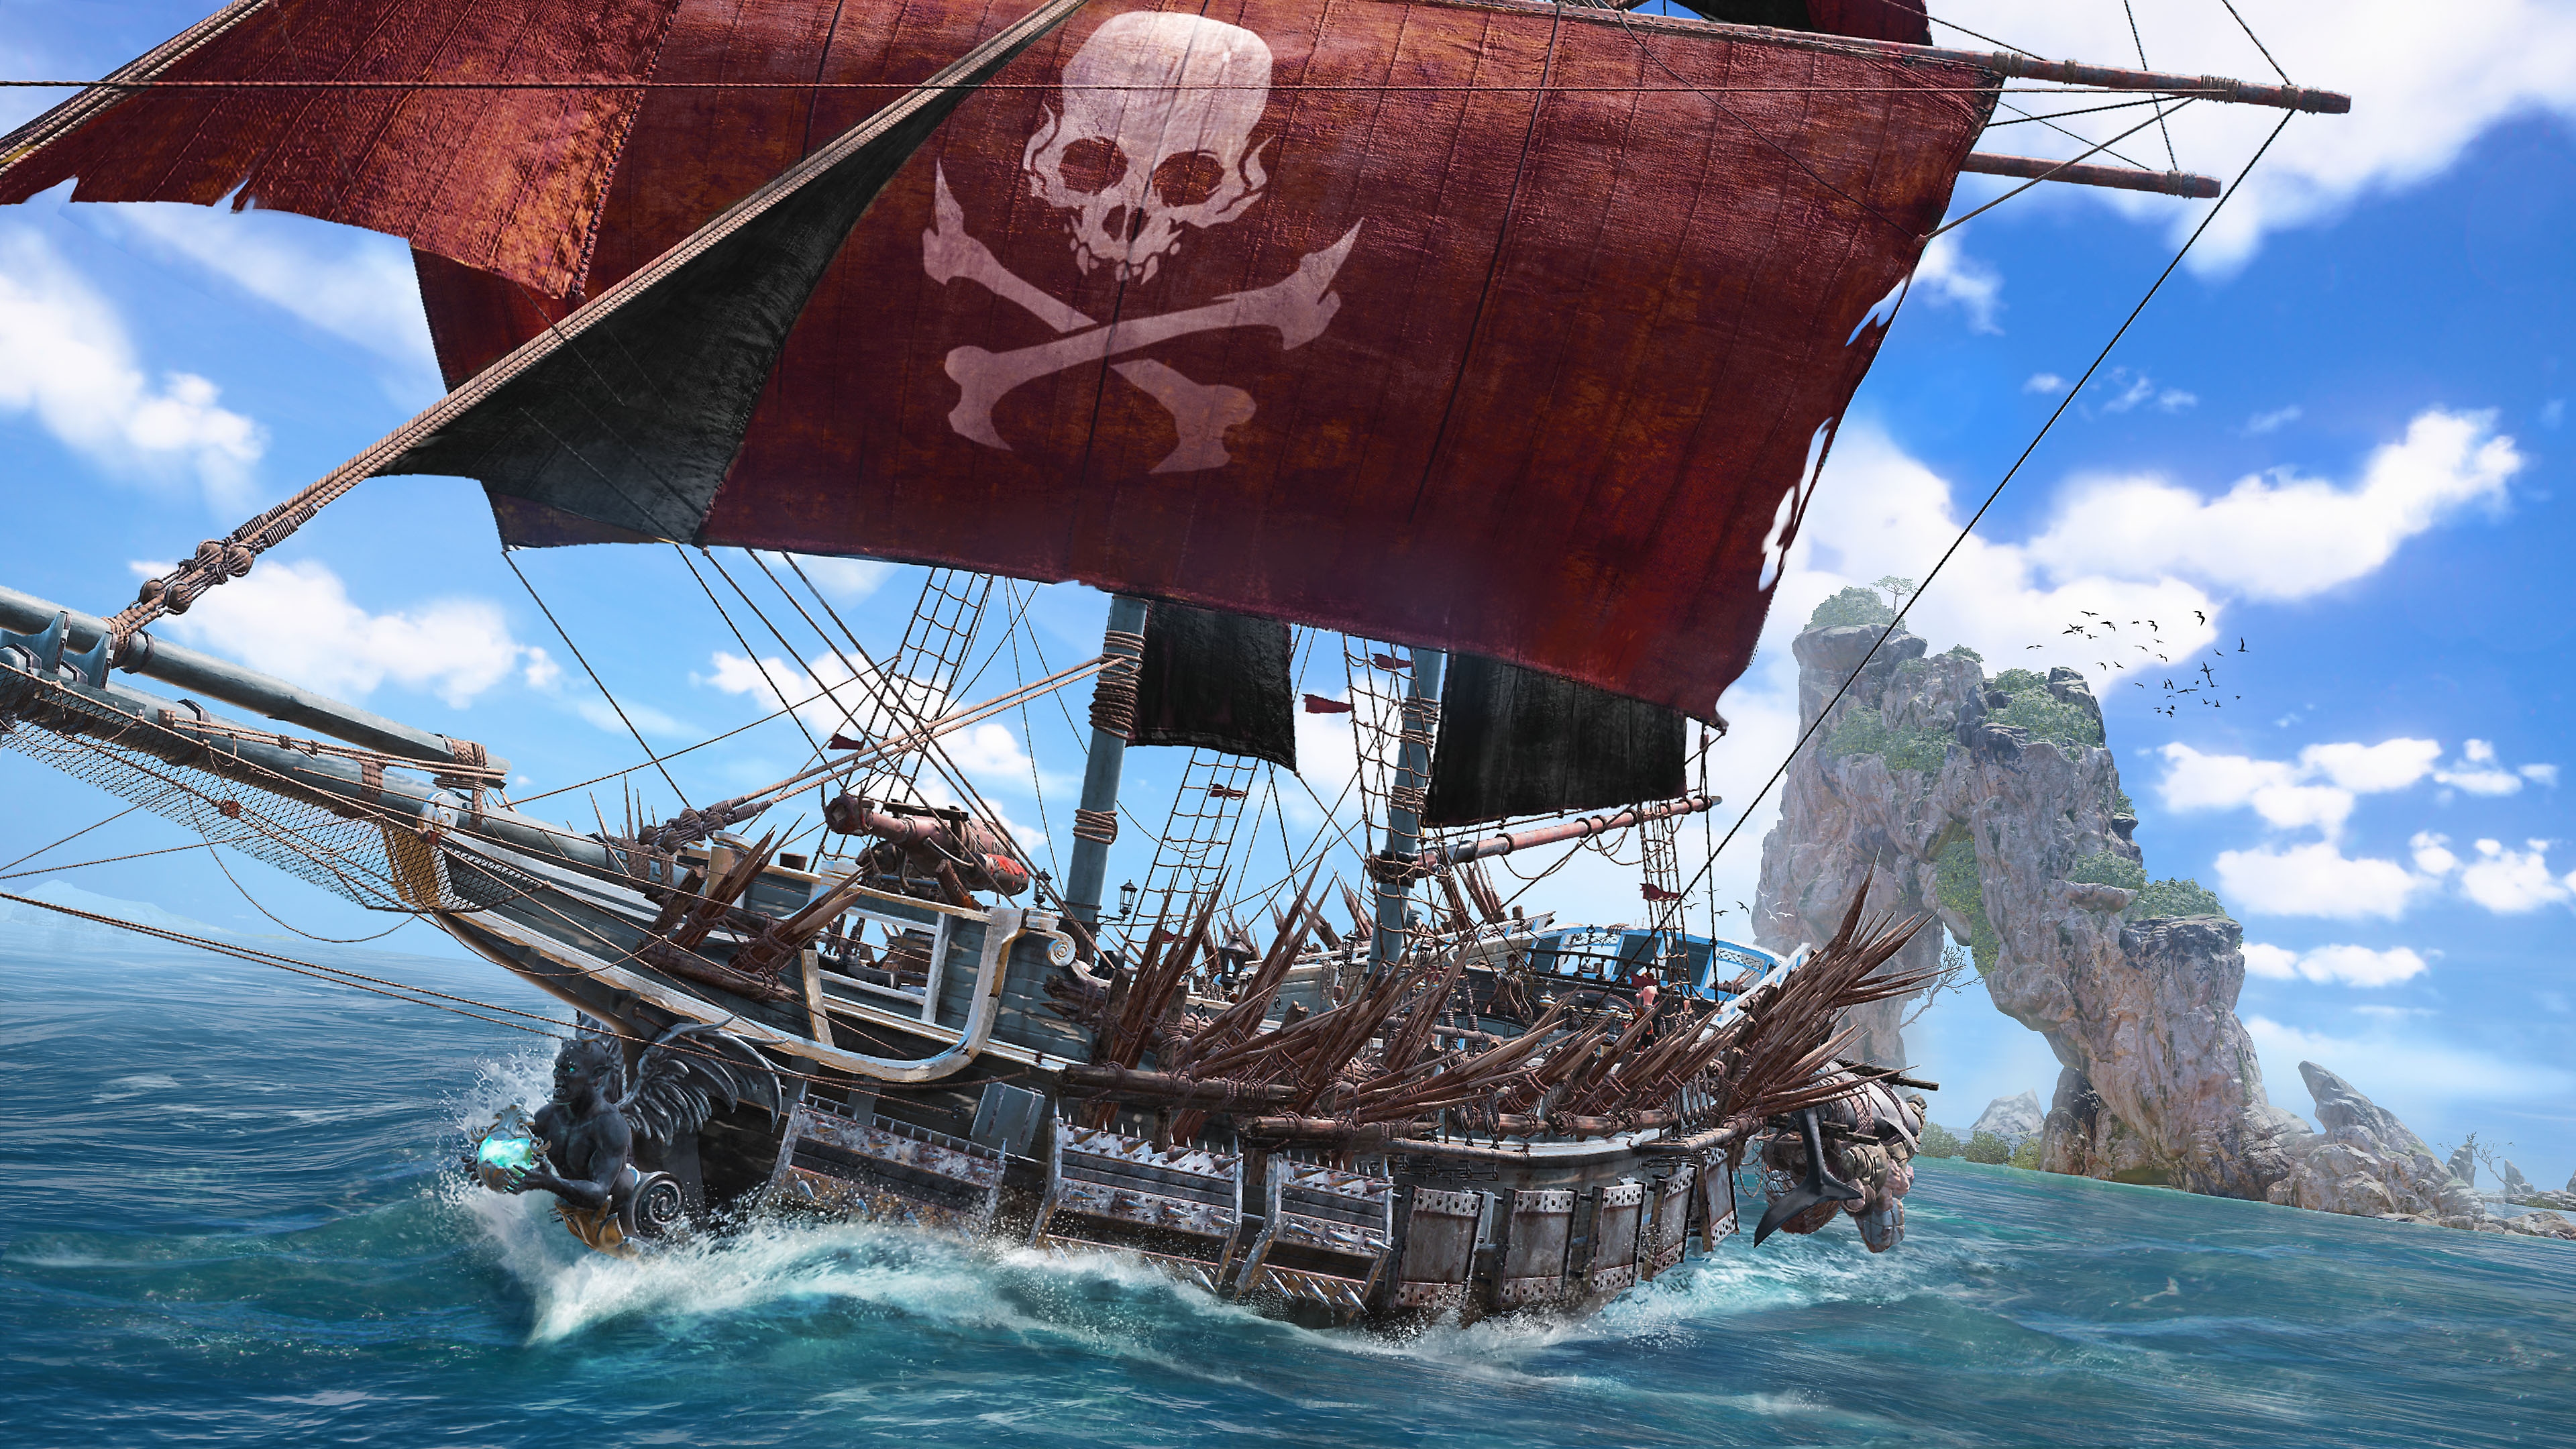 《Skull and Bones》螢幕截圖，顯示紅色主帆上有骷髏頭和骨頭交叉圖形的海盜船